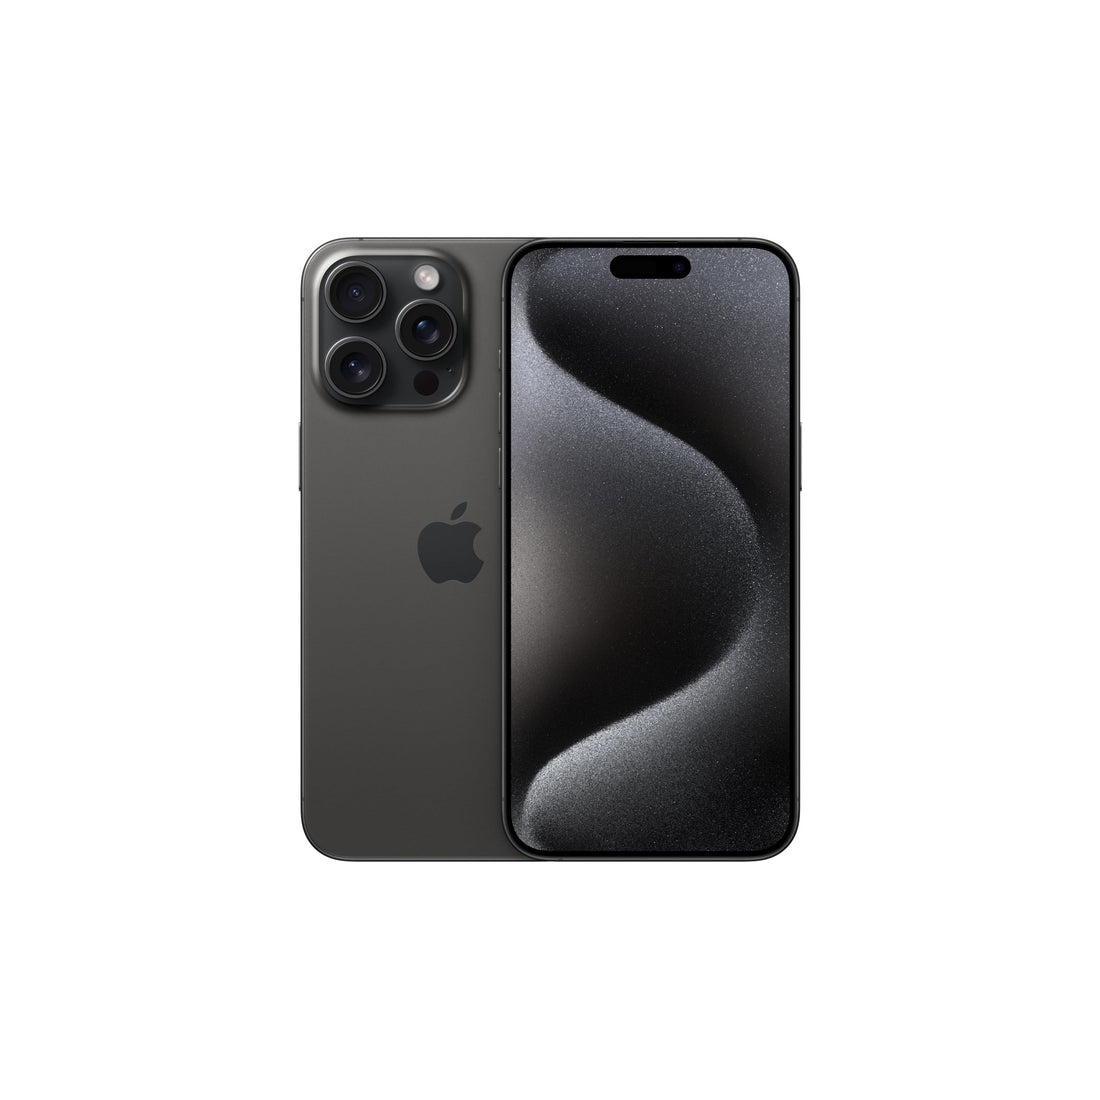 Apple iPhone 15 Pro Max (512 GB) - Titanio nero-iStoreMilano